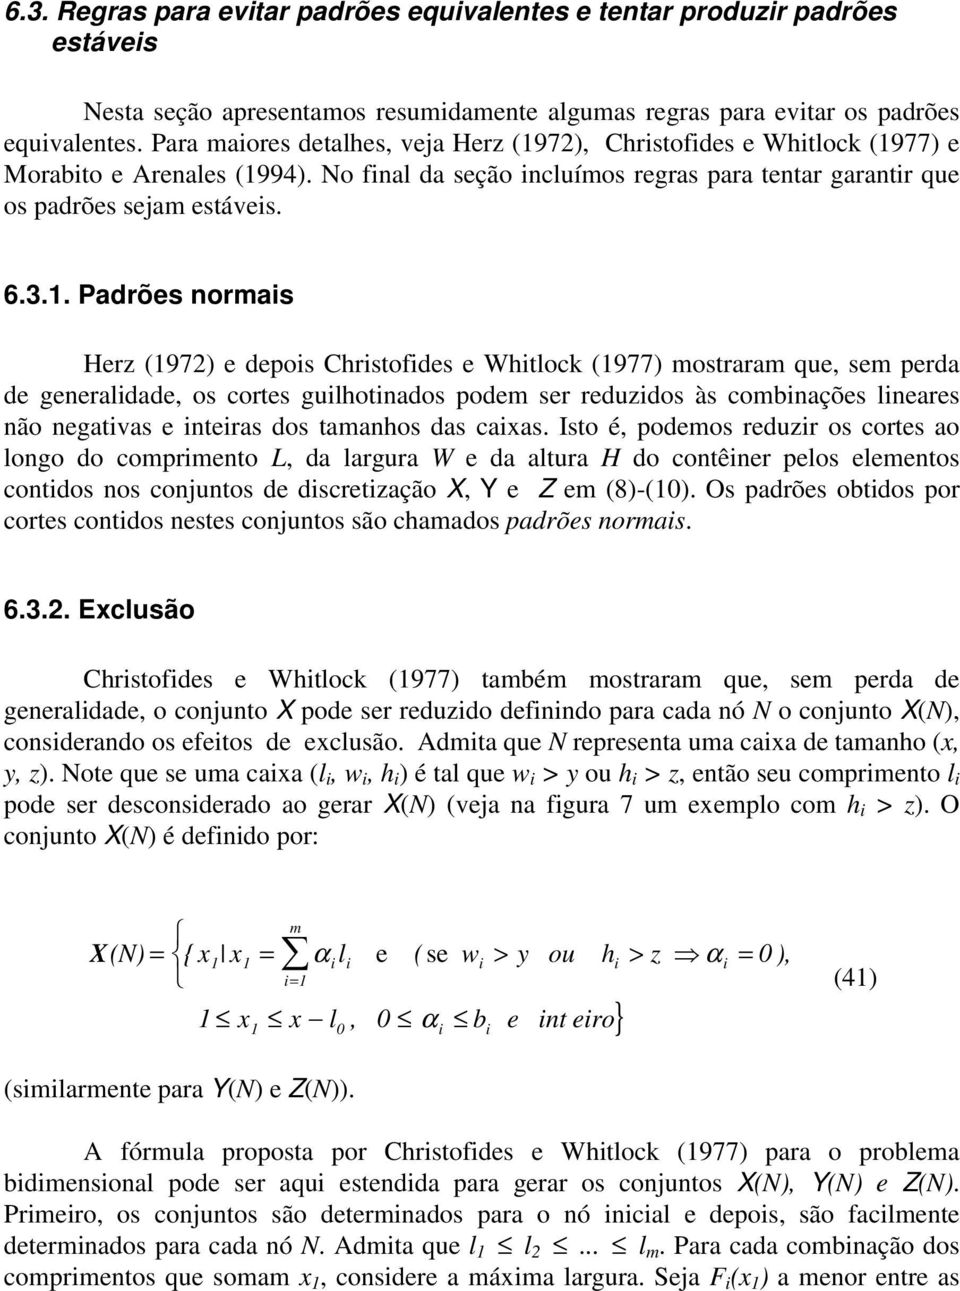 . Padrões norais Herz (972) e depois Christofides e Whitlock (977) ostrara que, se perda de generalidade, os cortes guilhotinados pode ser reduzidos às cobinações lineares não negativas e inteiras